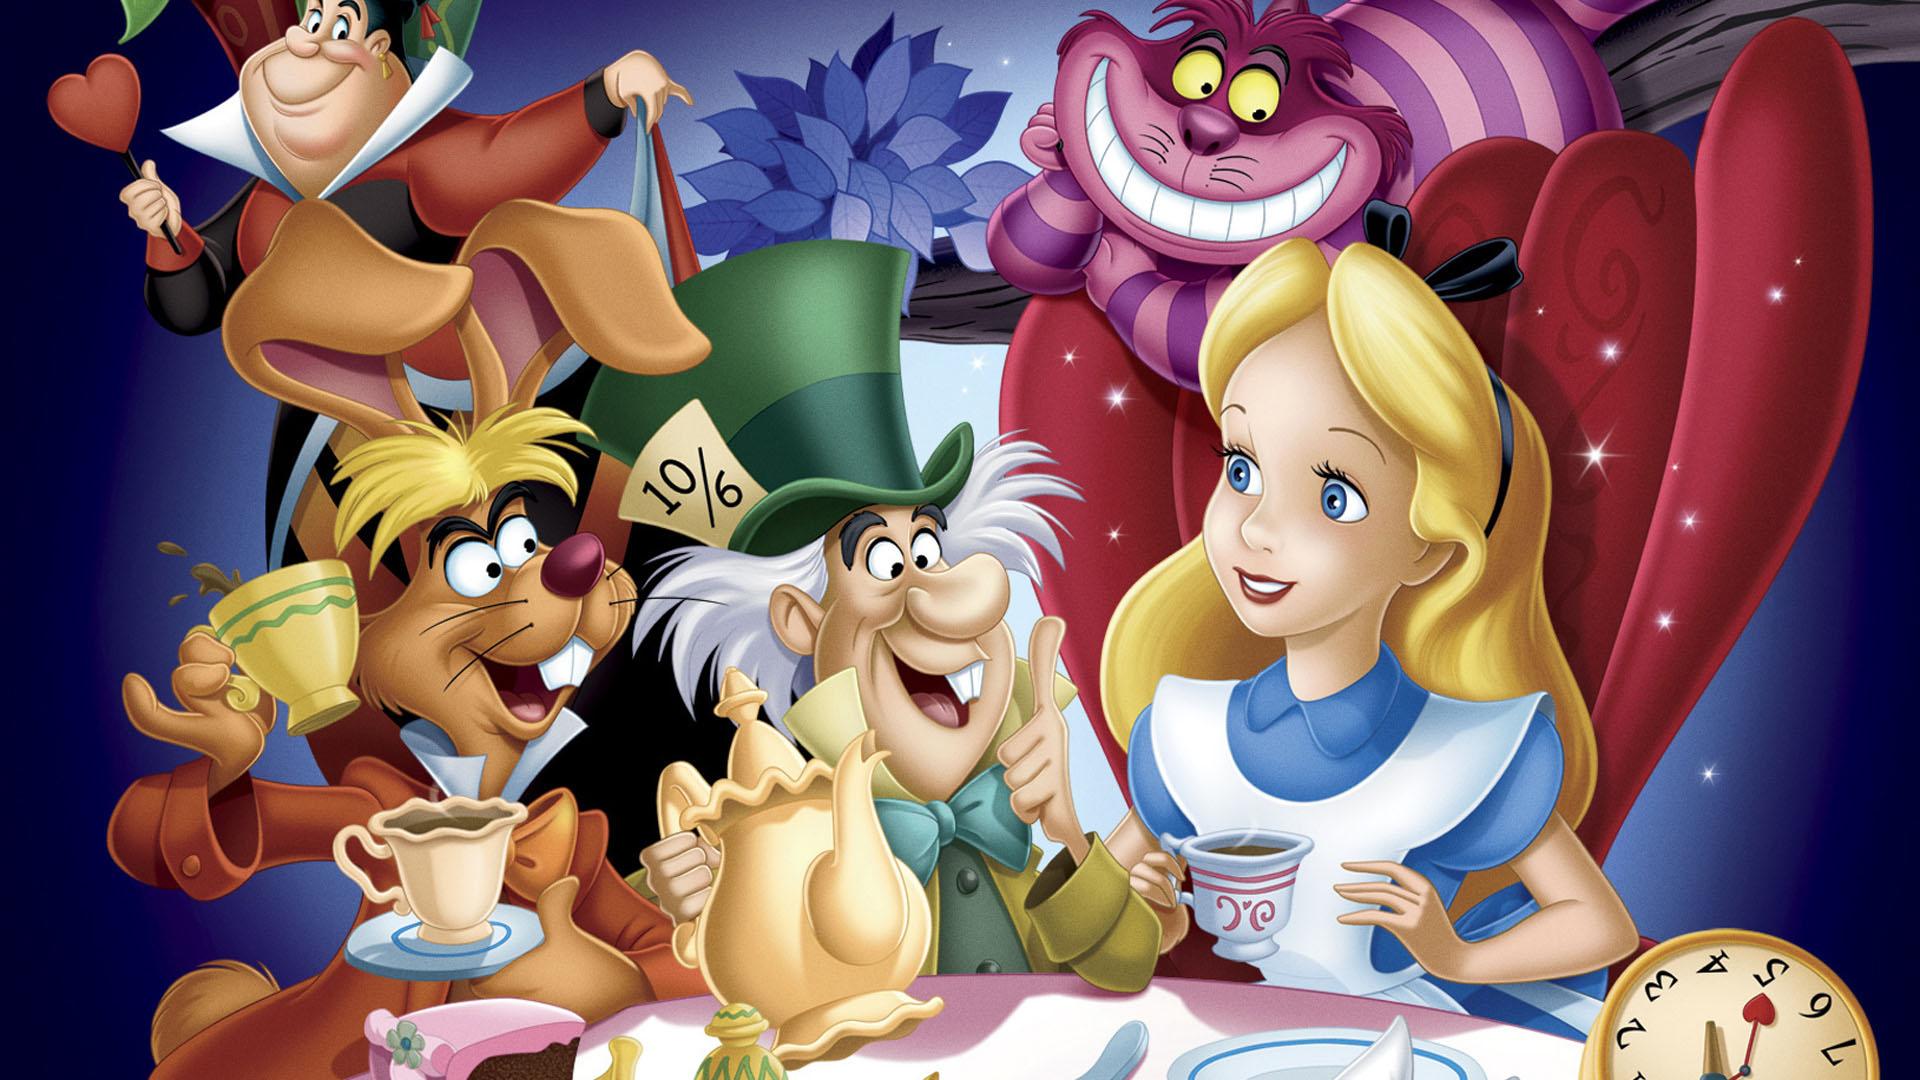 شخصیت آلیس، کد هتر و گربه خندان در پوستری از انیمیشن کلاسیک آلیس در سرزمین عجایب